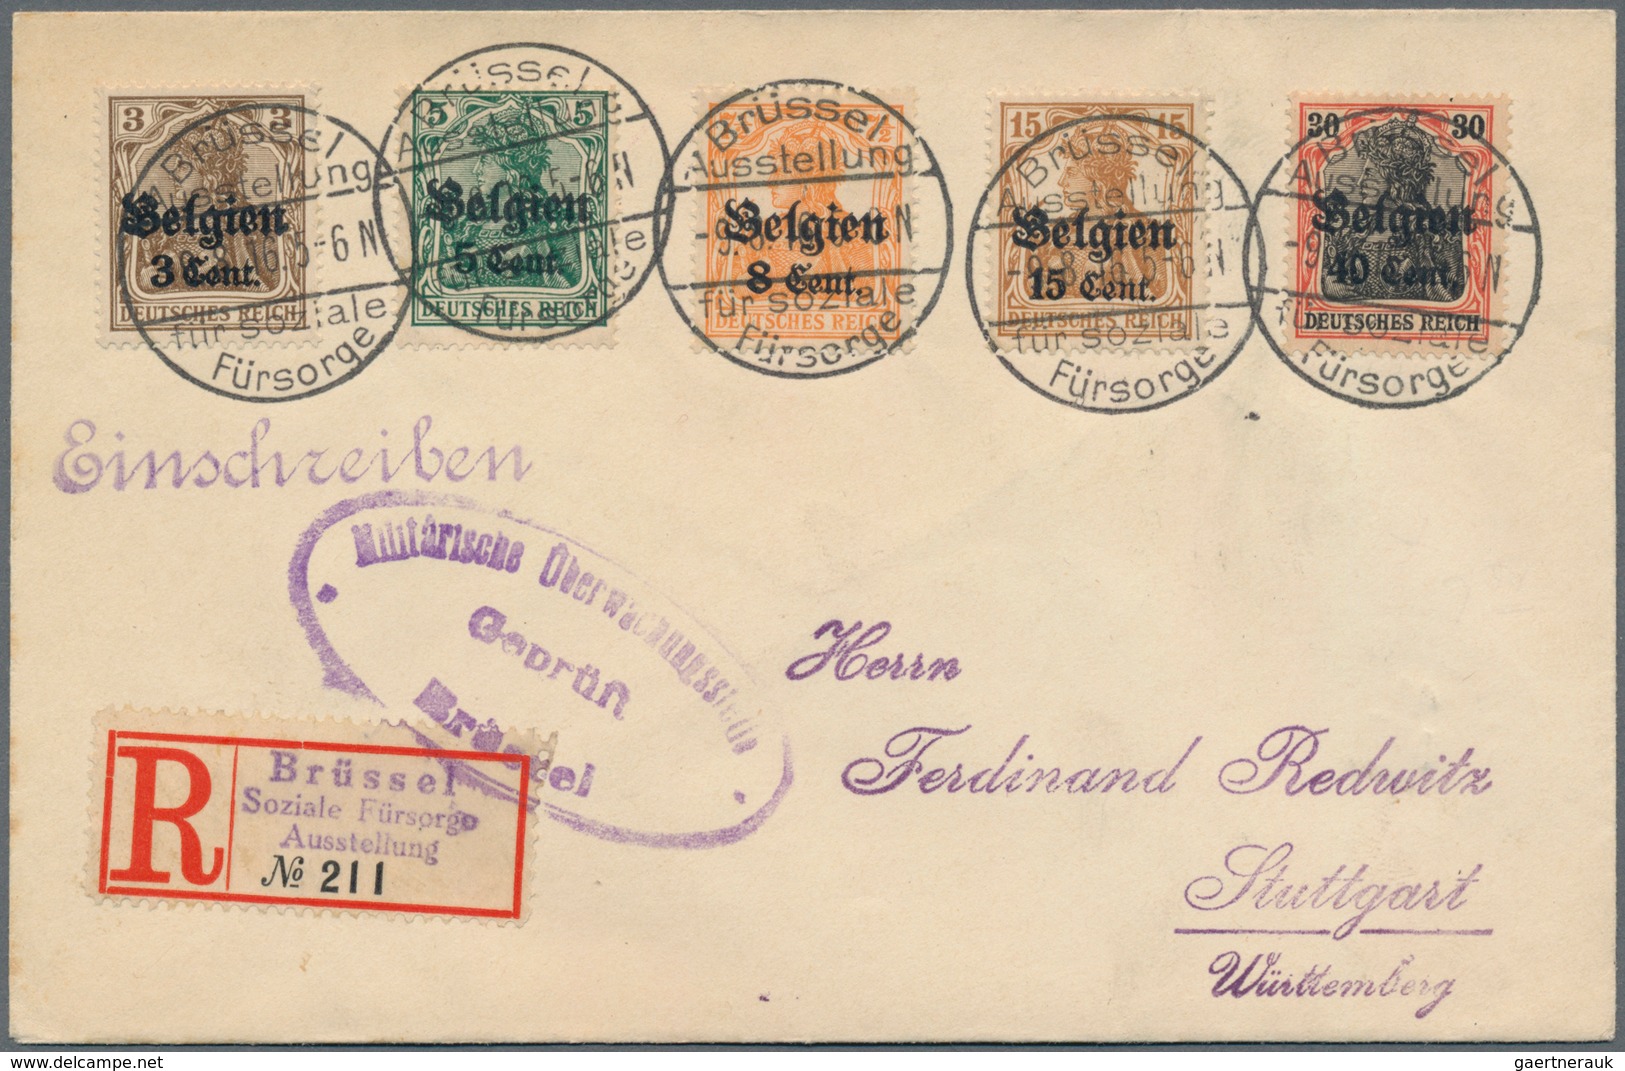 Deutschland: 1618/1950 ca., sehr gehaltvoller Posten mit über 200 Belegen, dabei Vorphilatelie mit f